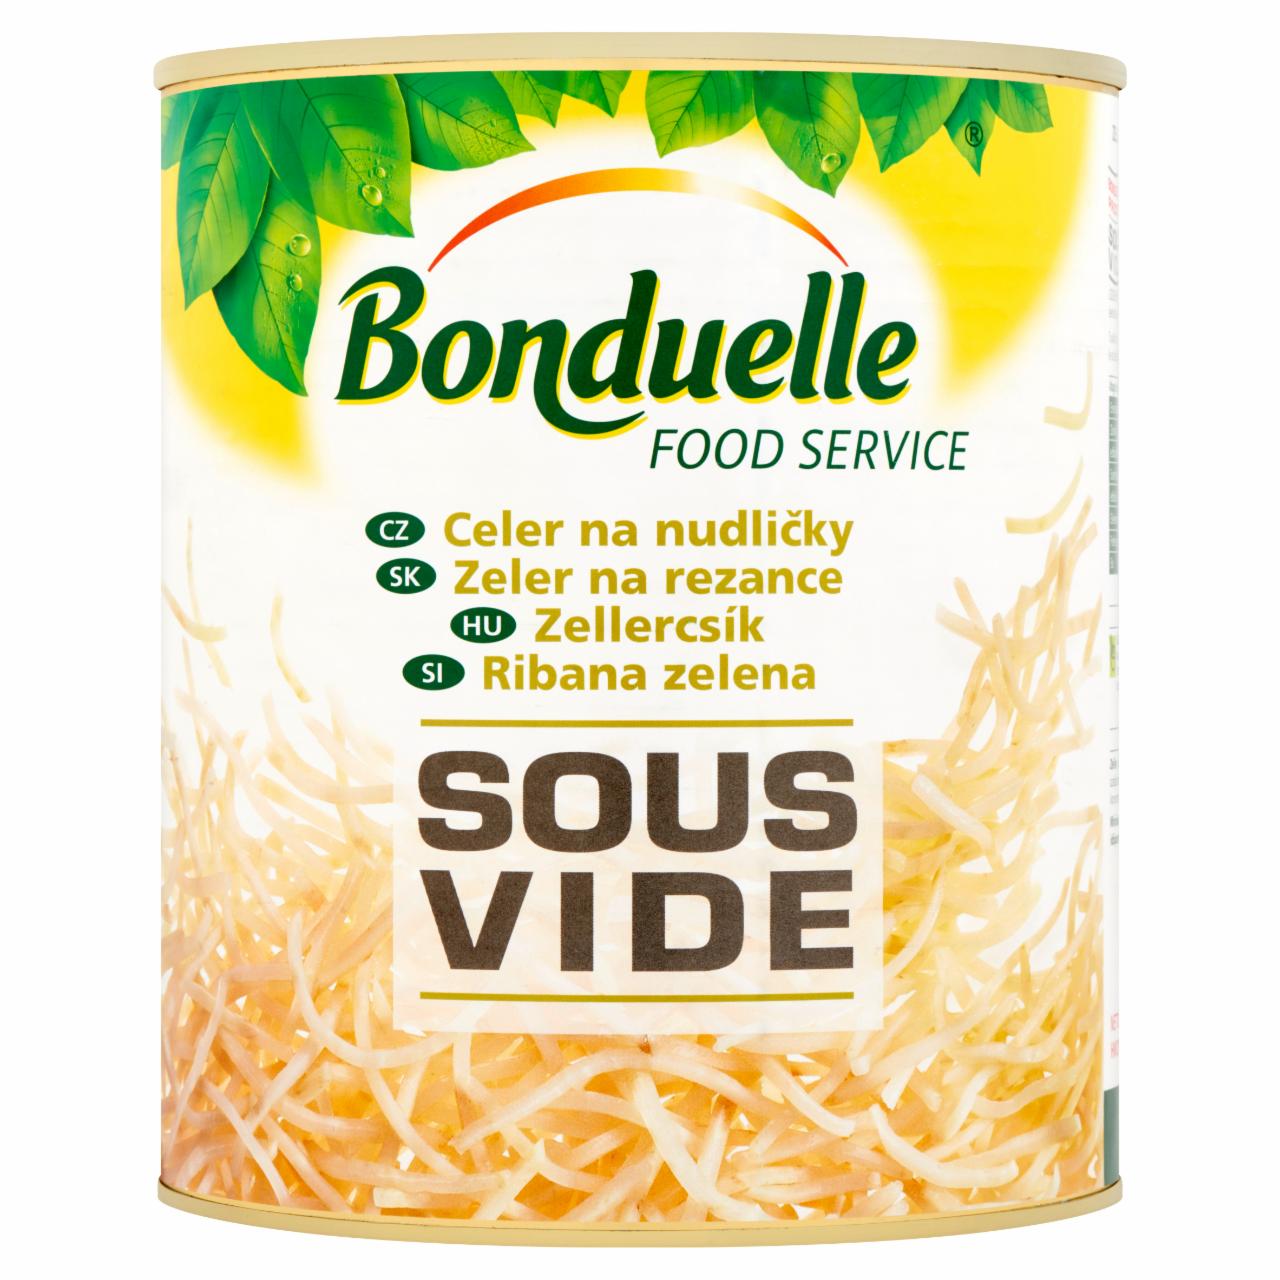 Képek - Bonduelle Food Service Sous Vide zellercsík 2100 g